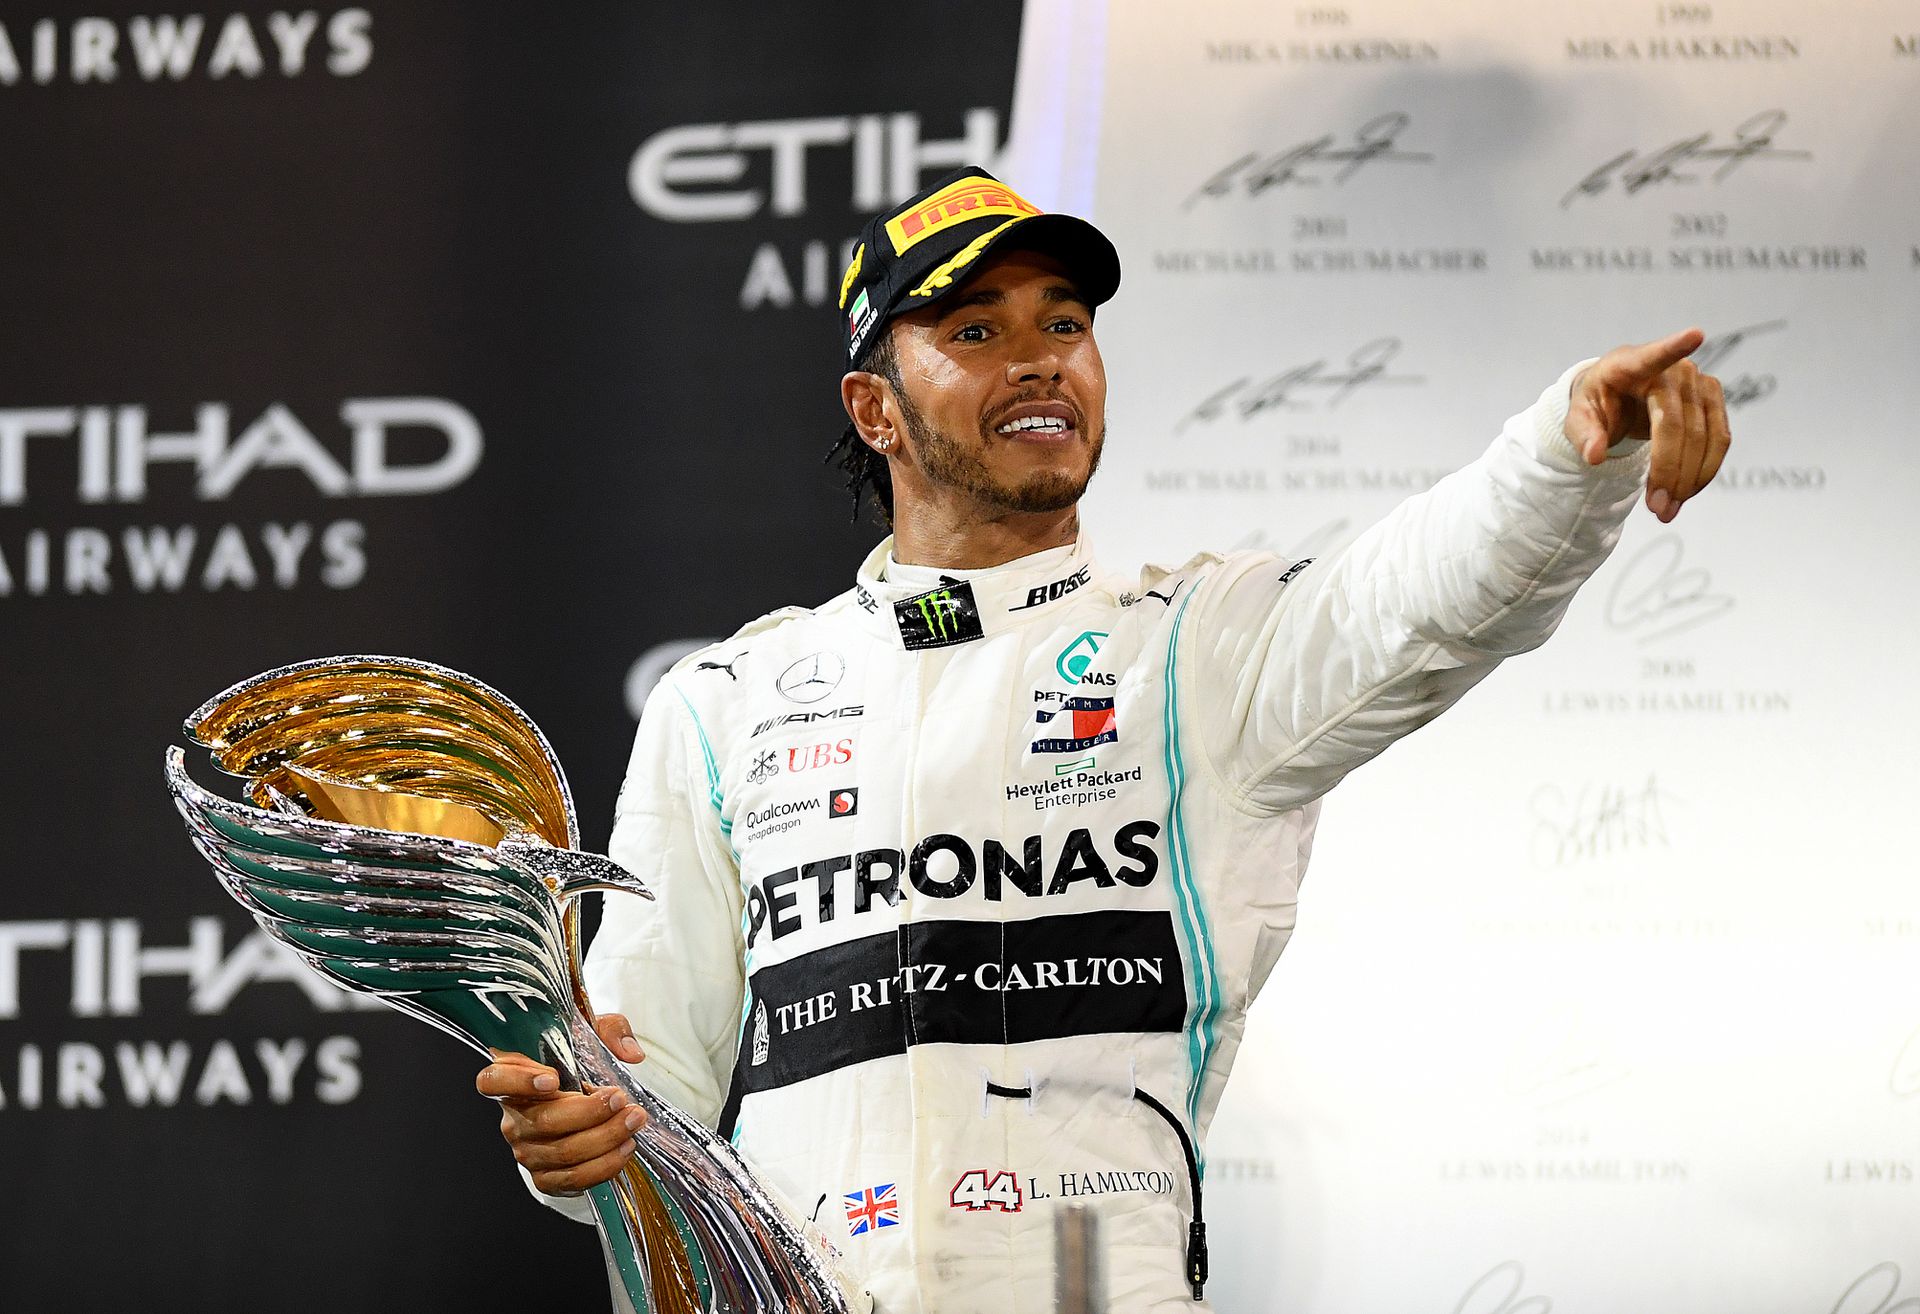 Az évi 16,25 milliárd forintnyi összeget kereső Lewis Hamilton már második éve vezeti a listát. Fotó: GettyImages